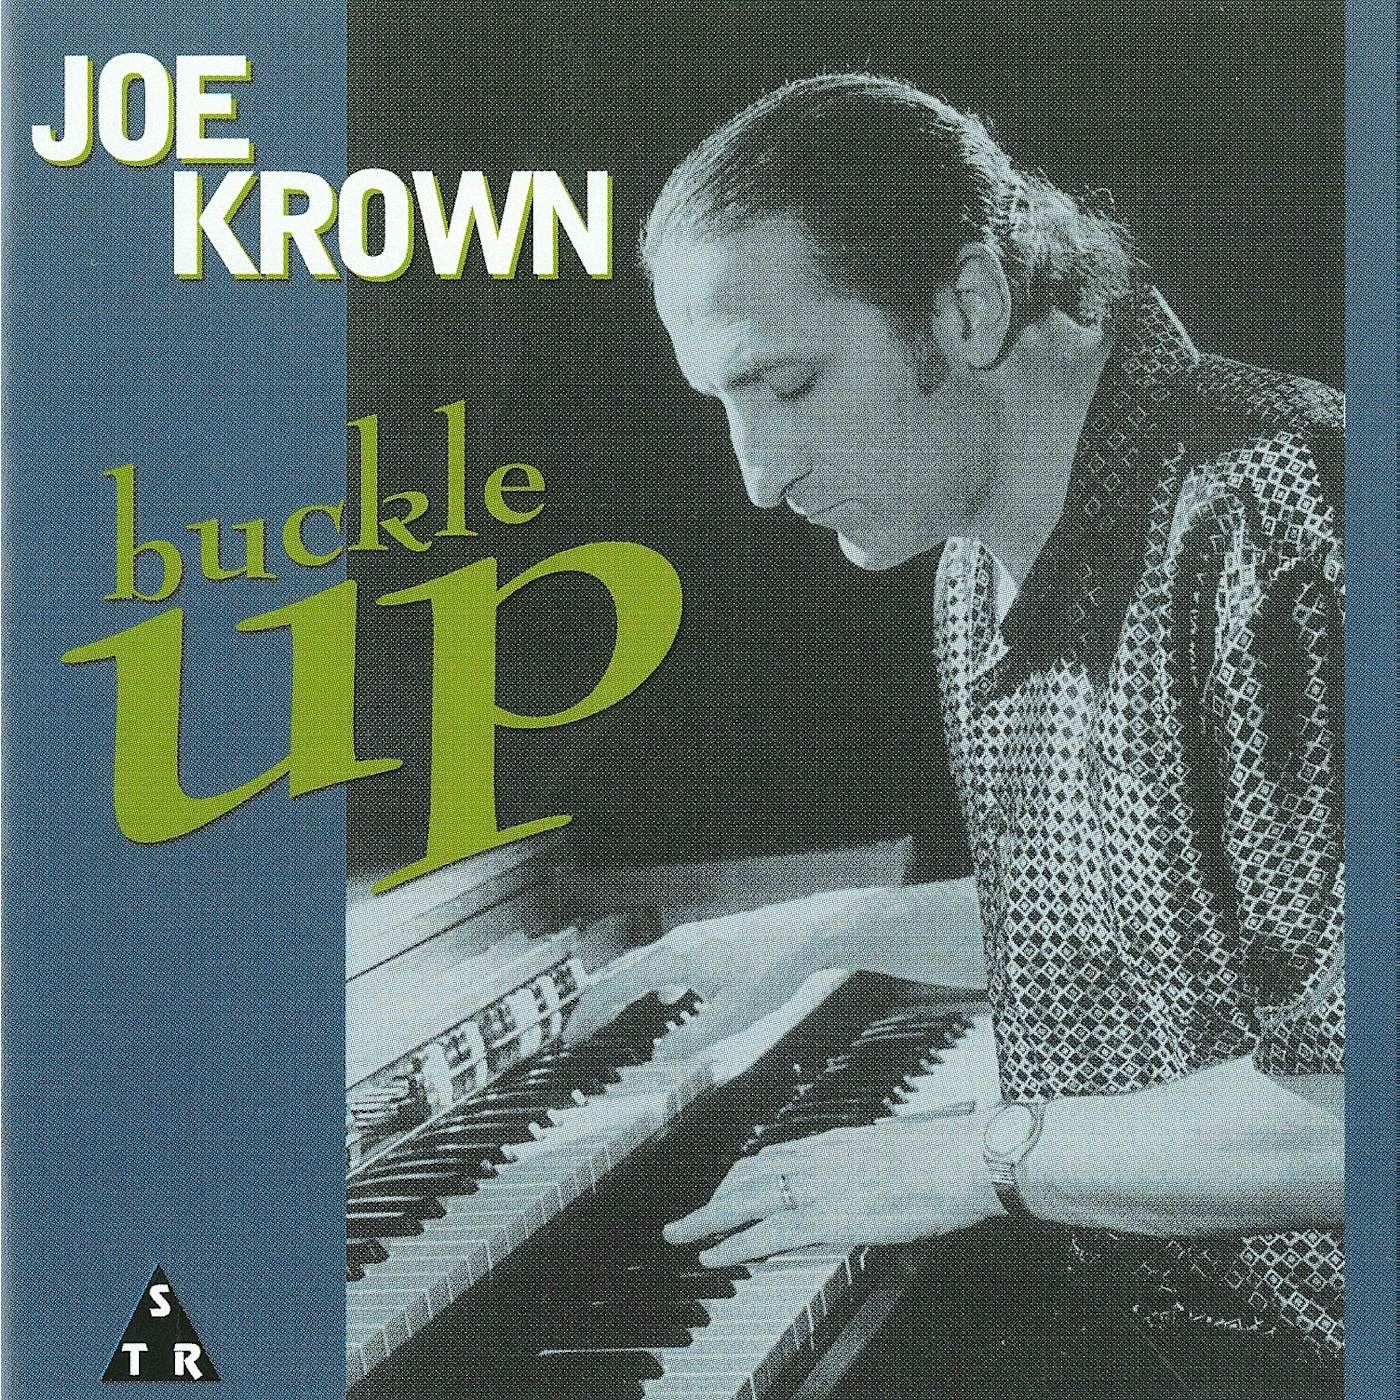 Joe Krown BUCKLE UP CD